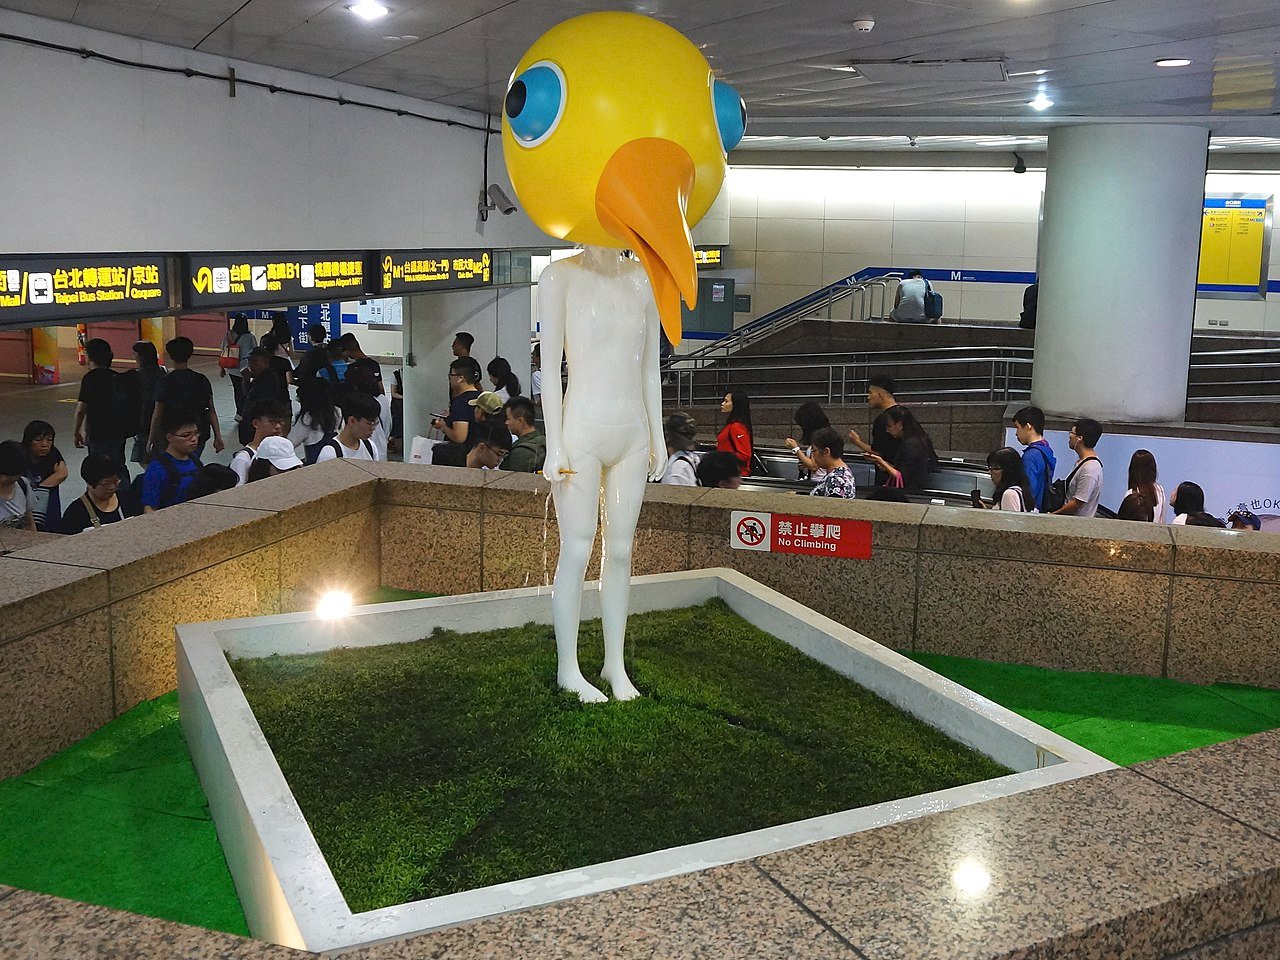 「夢遊」鳥人佇立台北車站11年 藝術家決定撤展